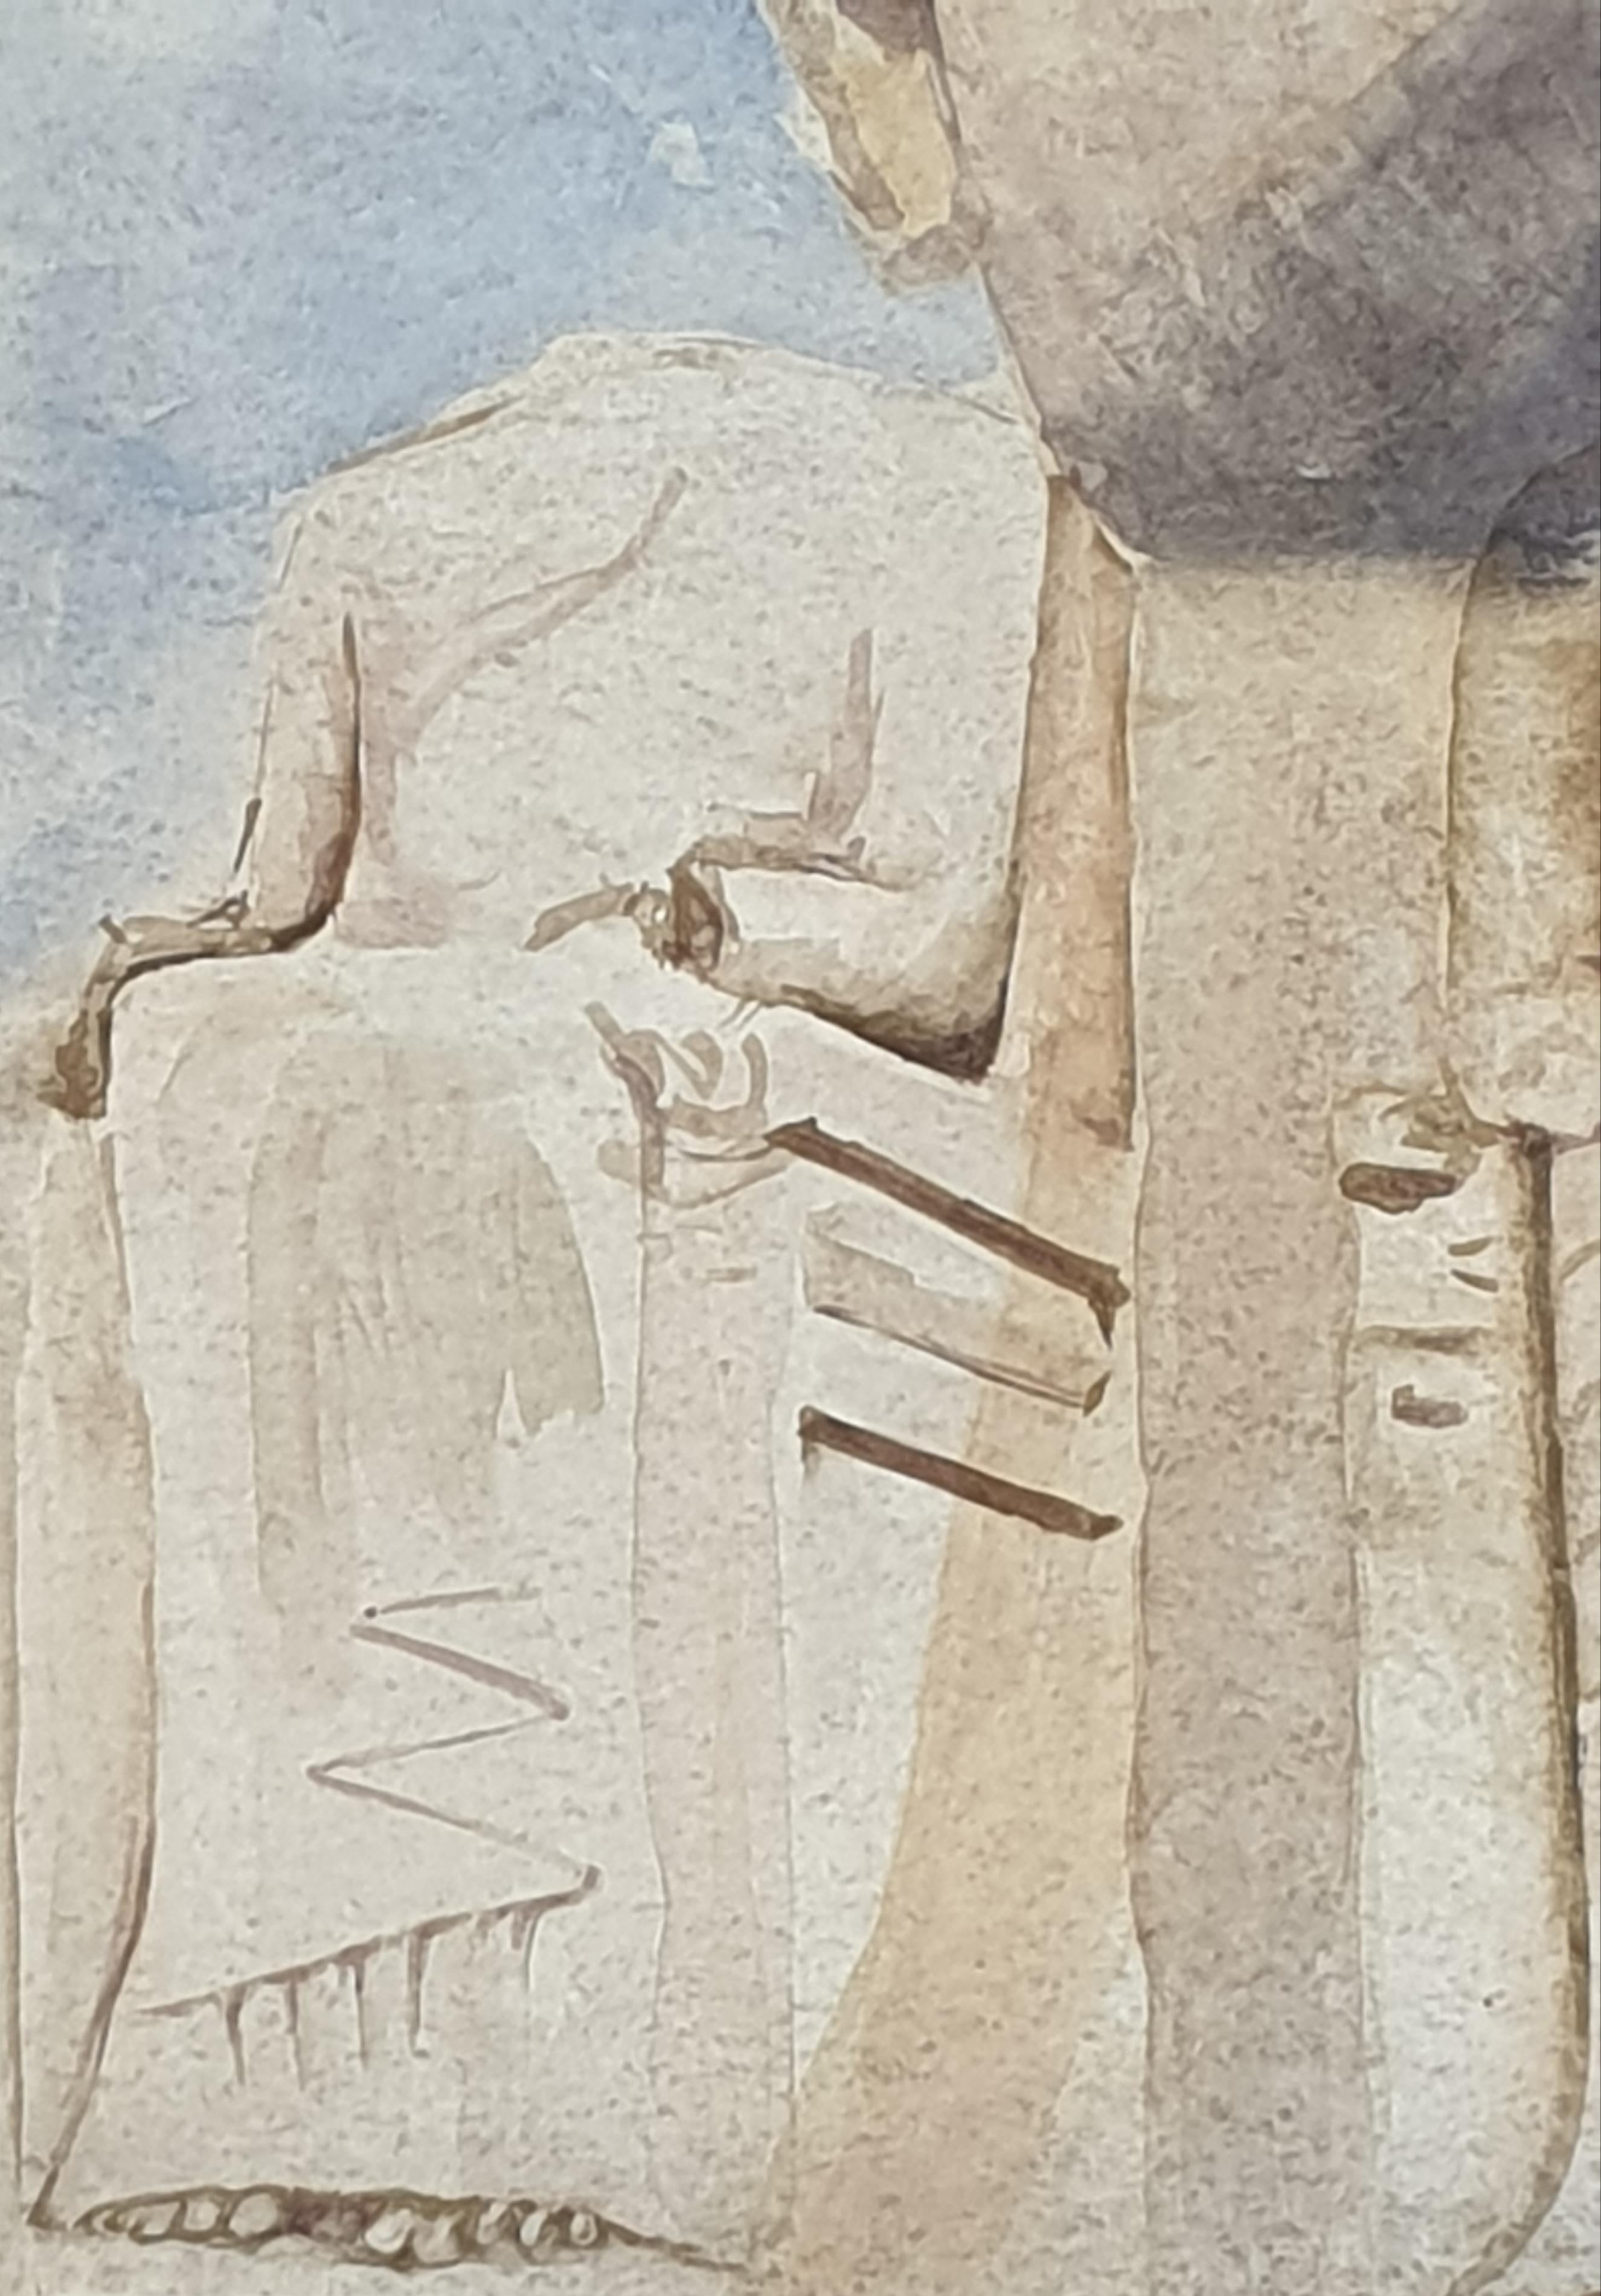 Gouache et aquarelle sur papier de la fin du XXe siècle de l'artiste britannique Derek Carruthers. Le tableau est signé en bas à droite et signé et daté de 1985 au verso. 

Peinture imposante et colorée d'une tête colossale d'un héros classique